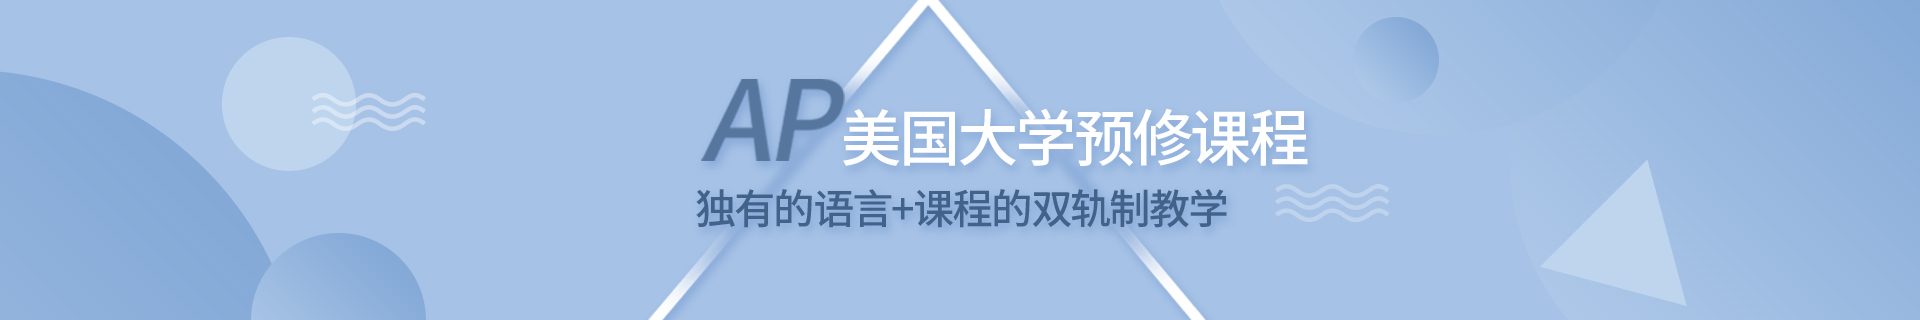 广州天河环球教育培训机构